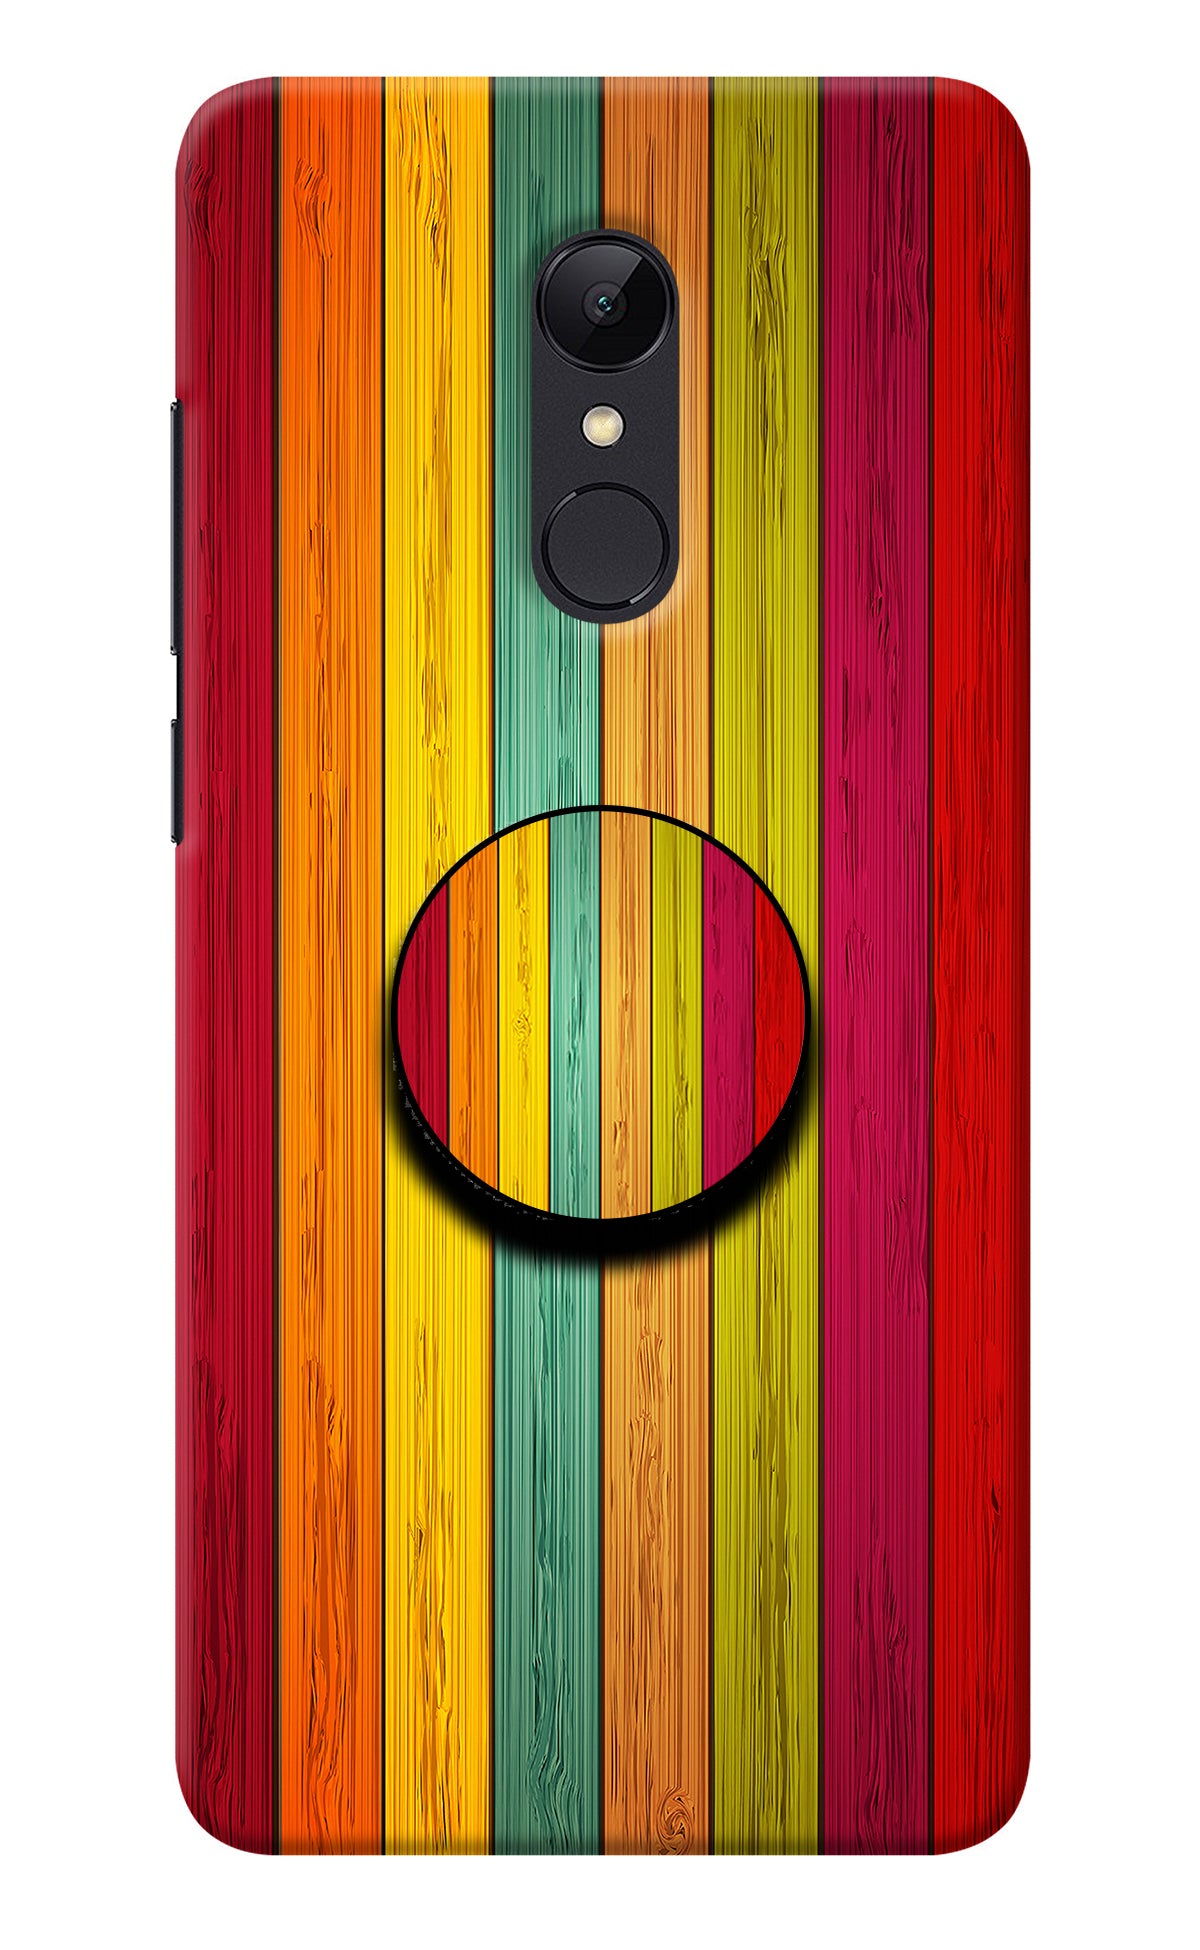 Multicolor Wooden Redmi Note 4 Pop Case